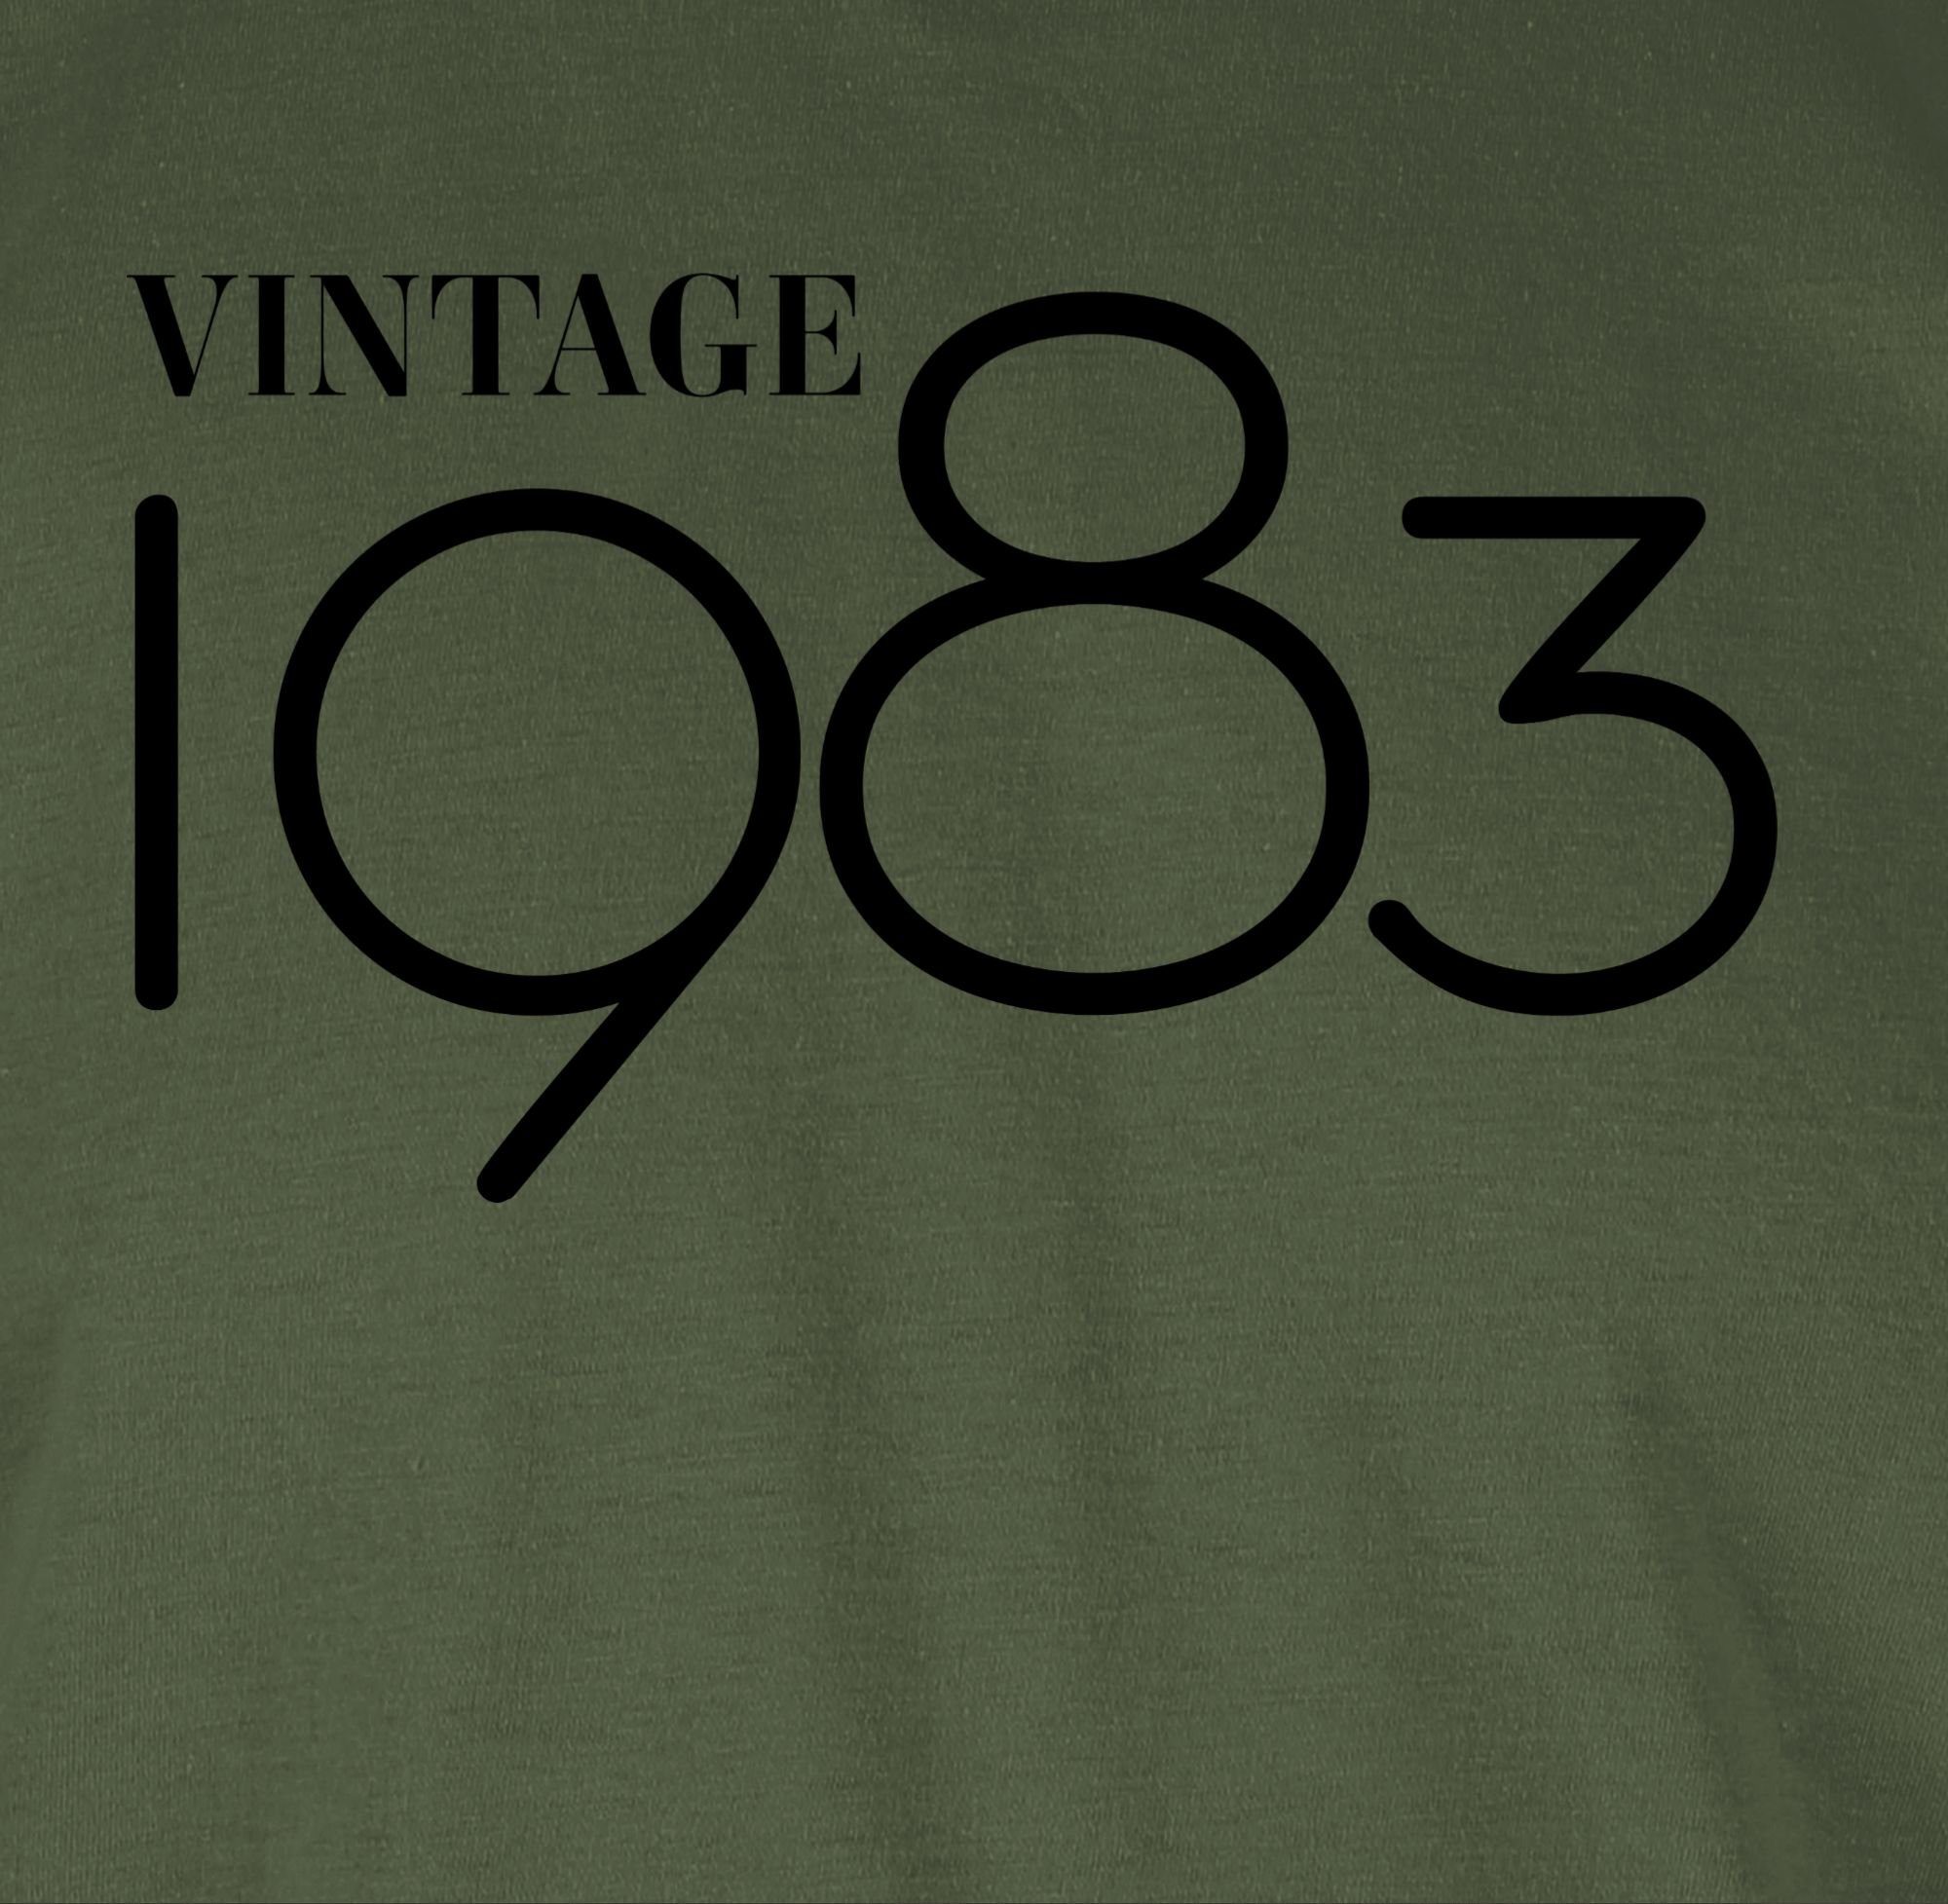 schwarz 01 Grün Geburtstag 40. Vintage Shirtracer 1983 T-Shirt Army